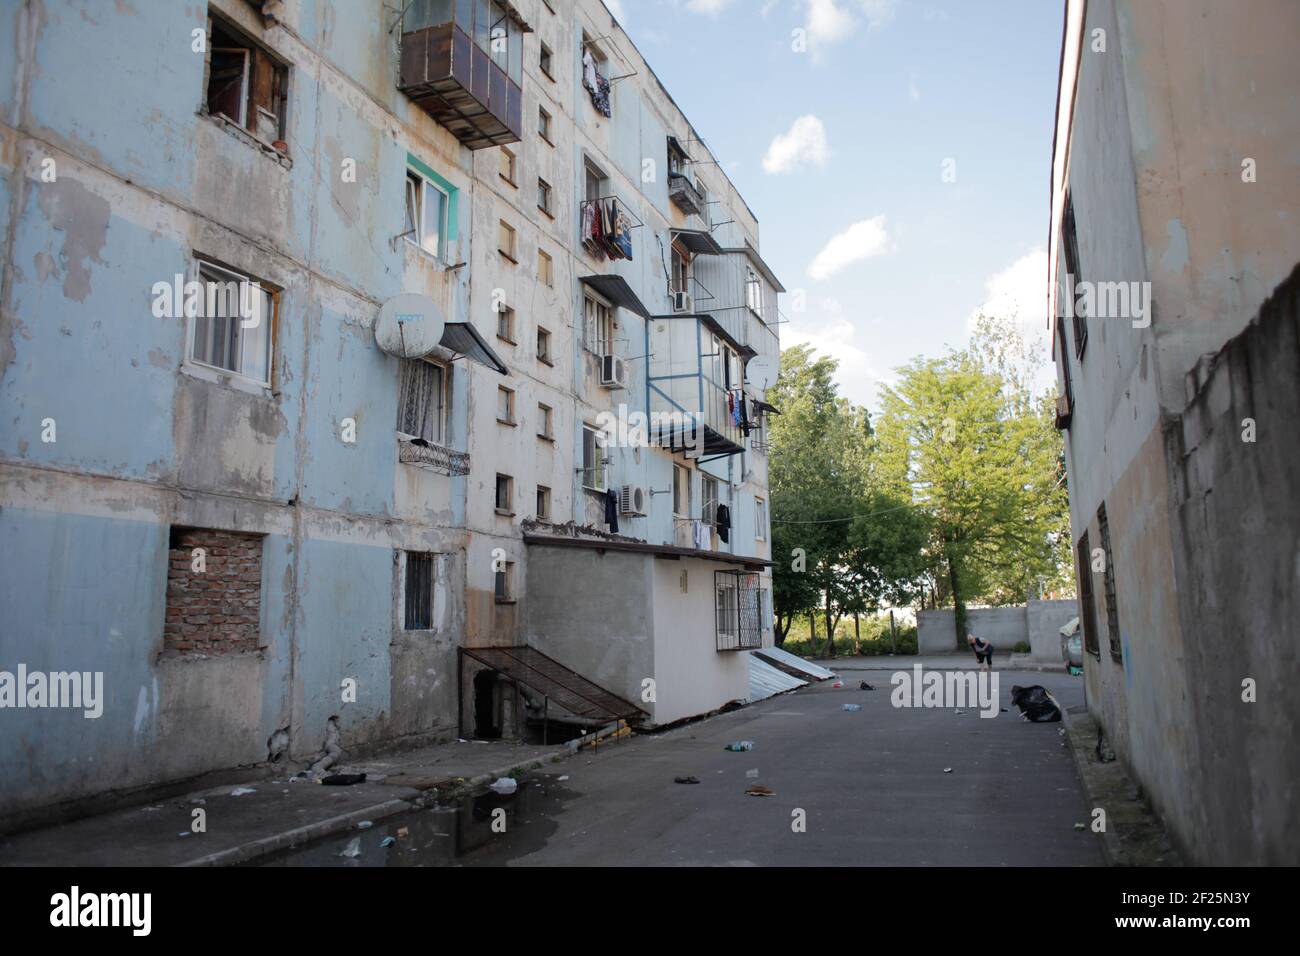 Bukarest, Rumänien - 21. April 2016: Abgenutzte Wohnblocks in einer armen Nachbarschaft in Bukarest. Stockfoto